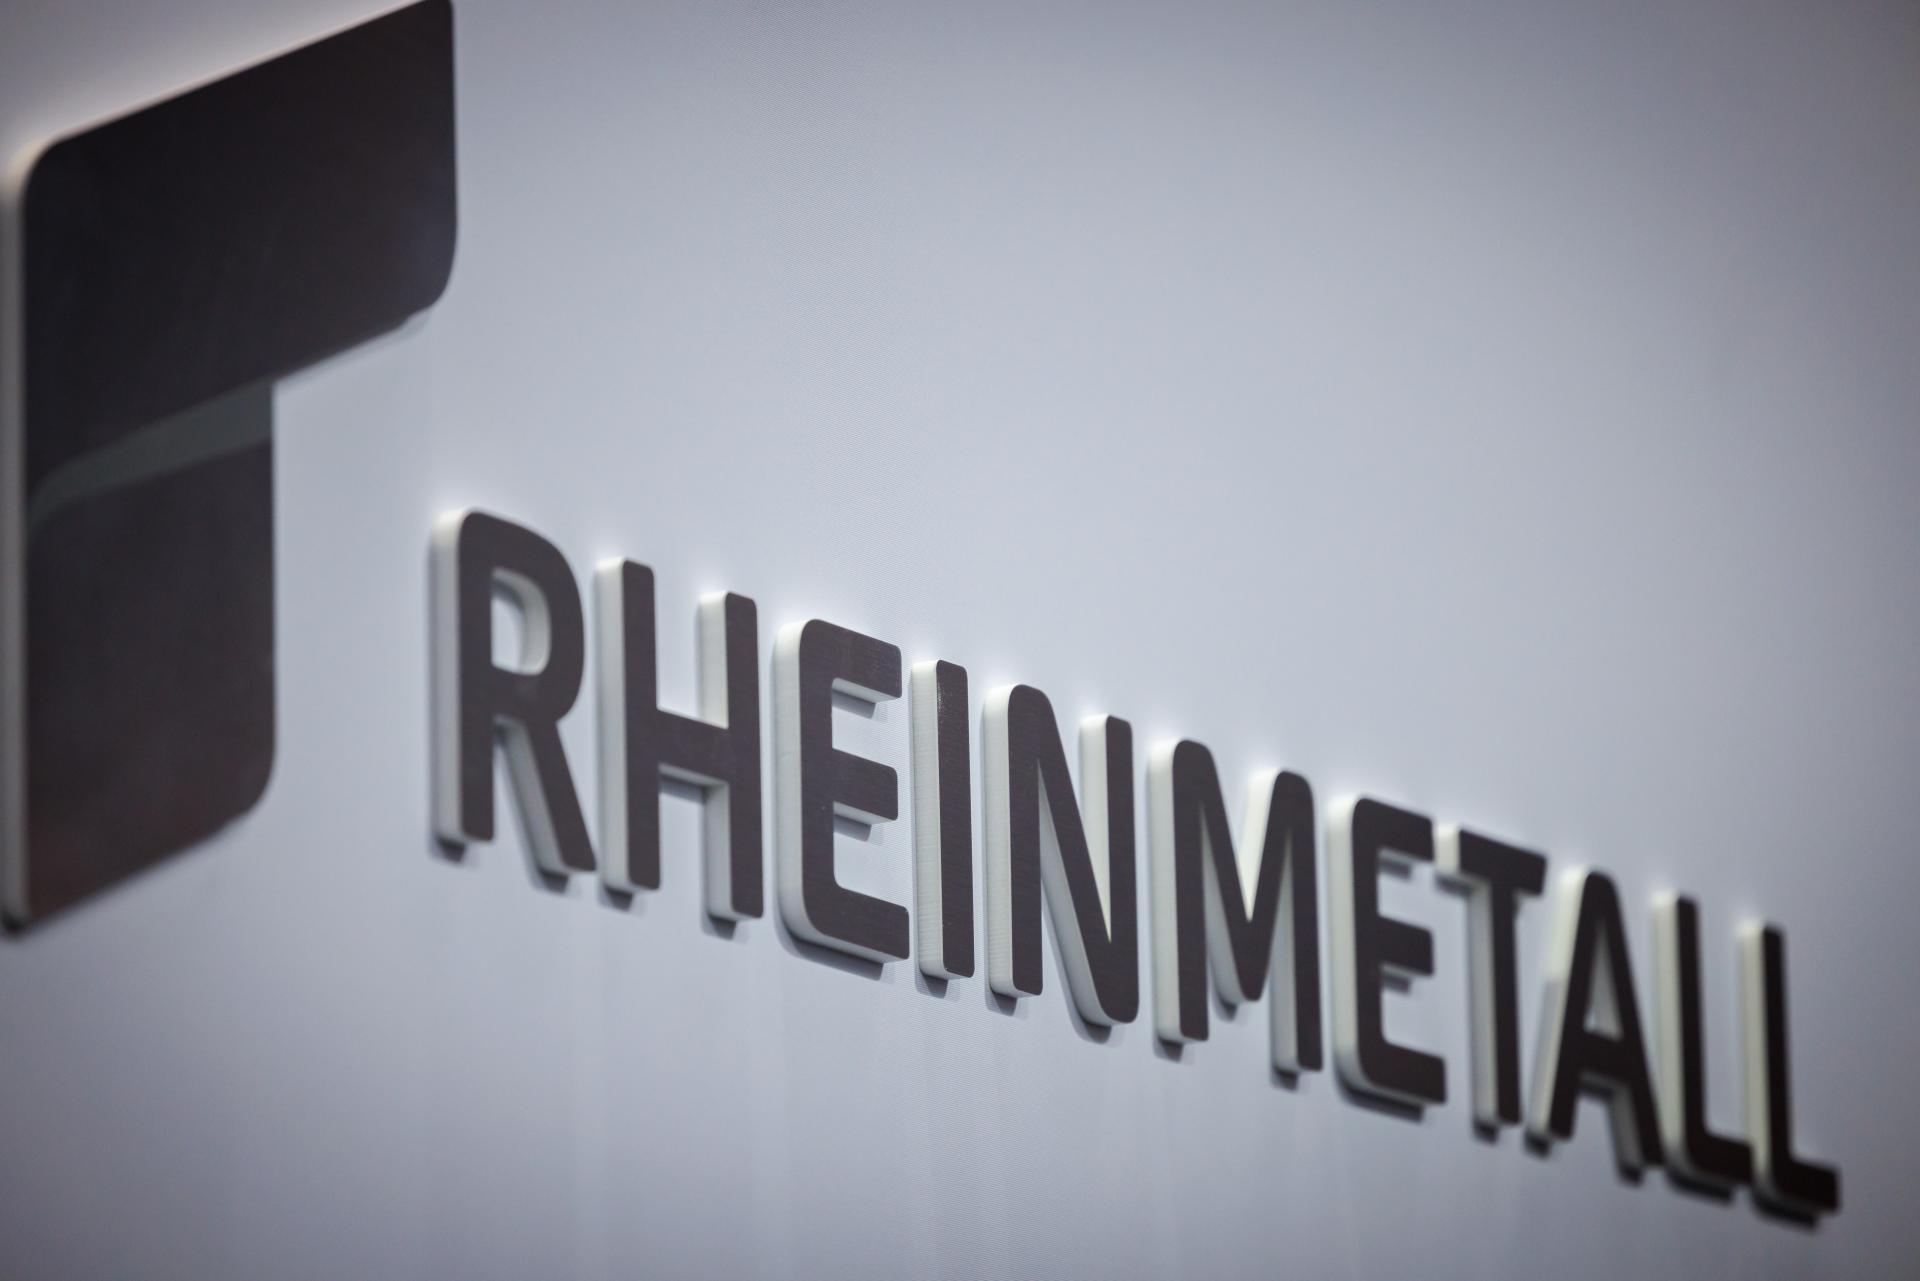 Nemecká vláda zadala zbrojárskej firme Rheinmetall miliardovú zákazku